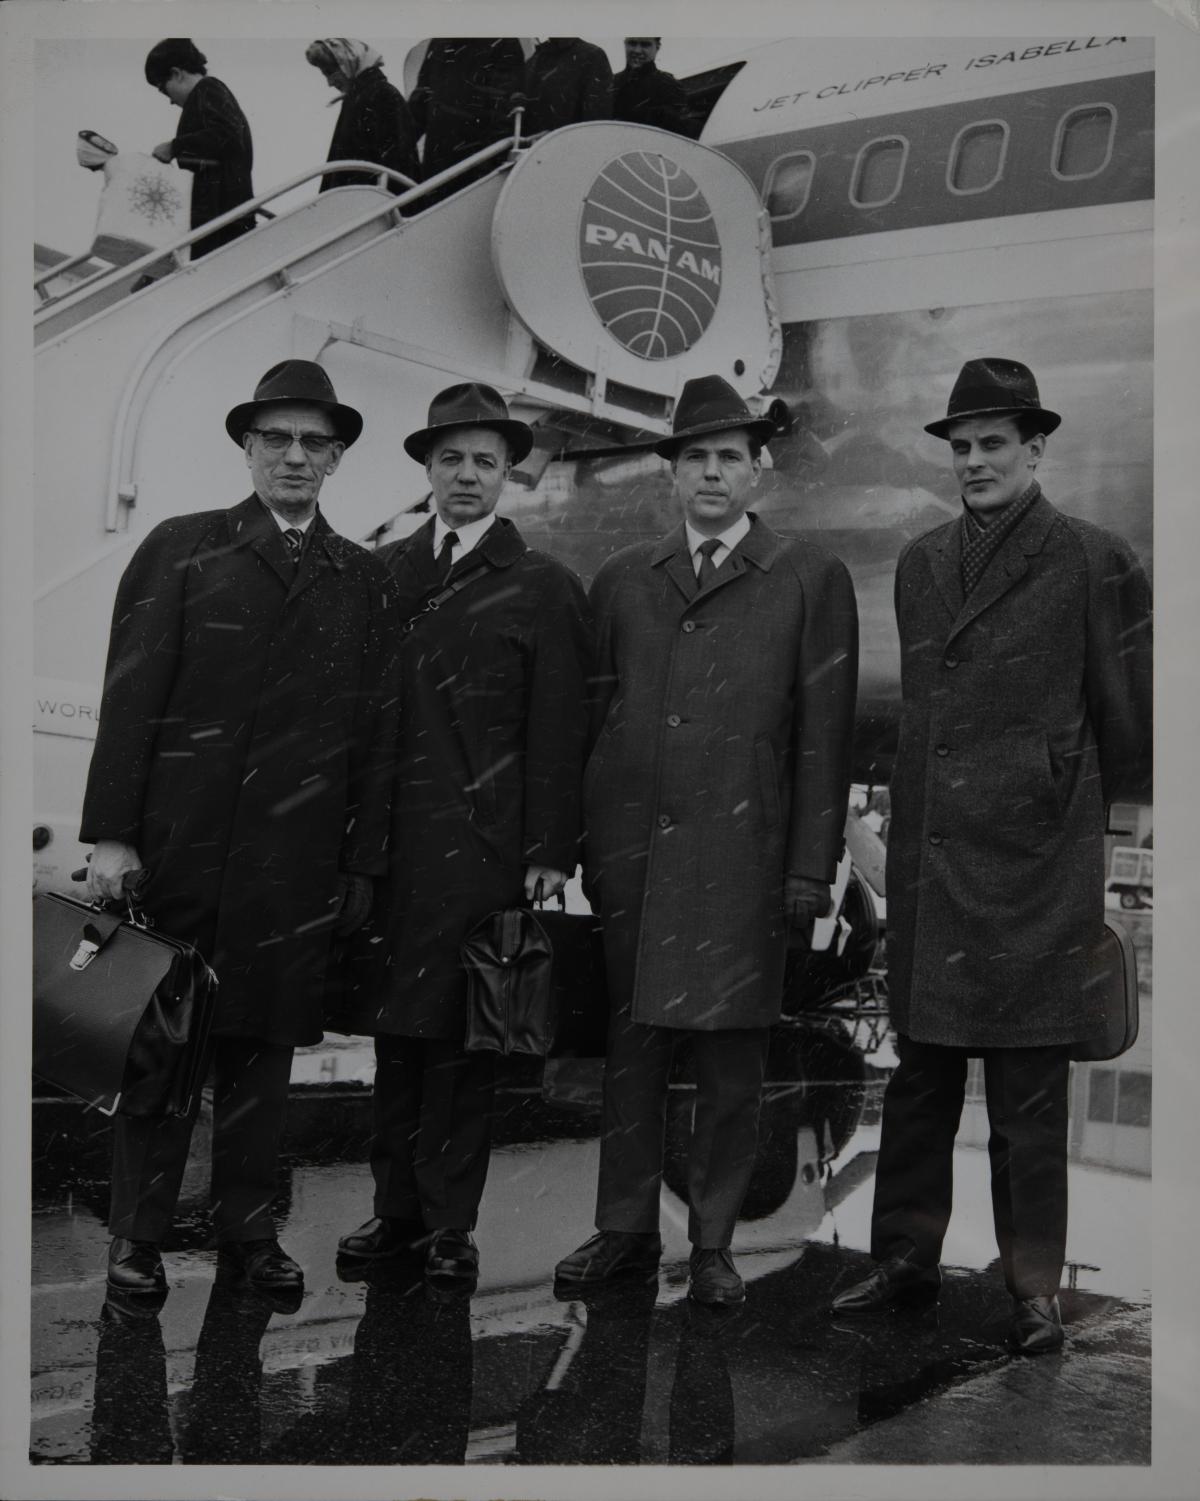 Neljä miestä poseeraa Pan Am -yhtiön lentokoneen edessä.